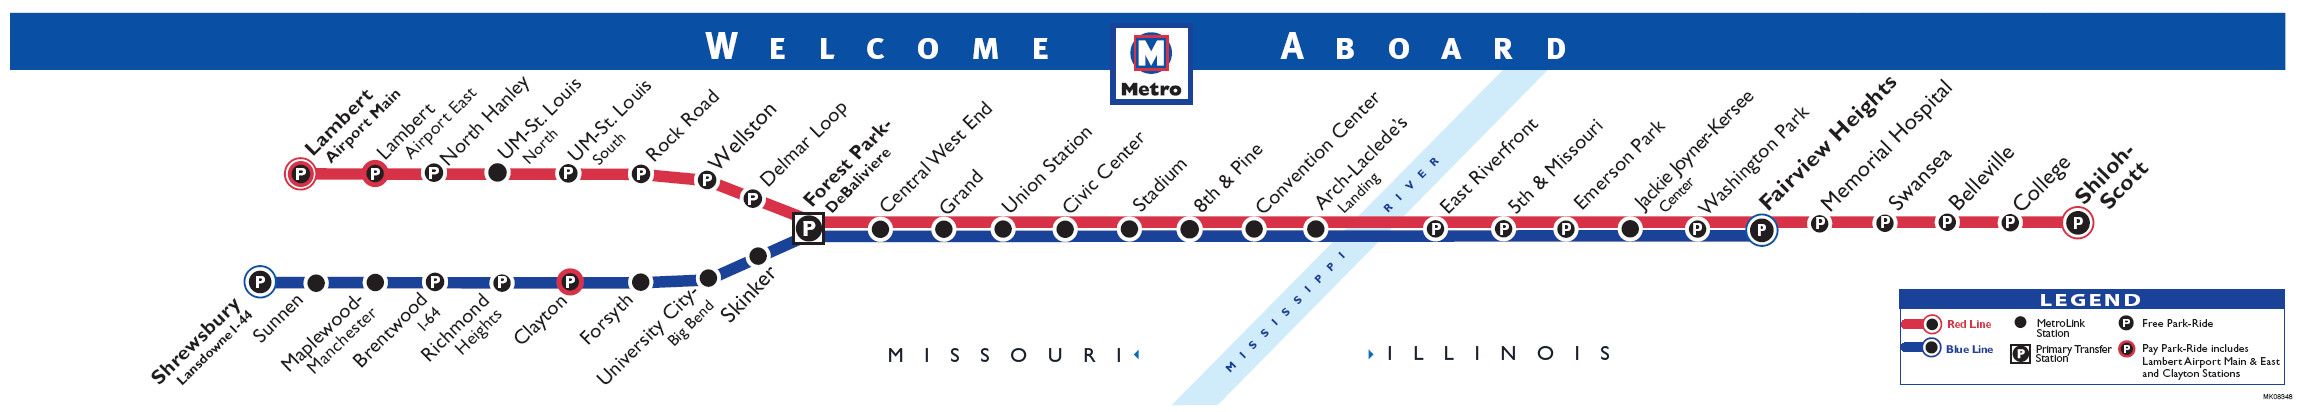 Metro map of Saint Louis